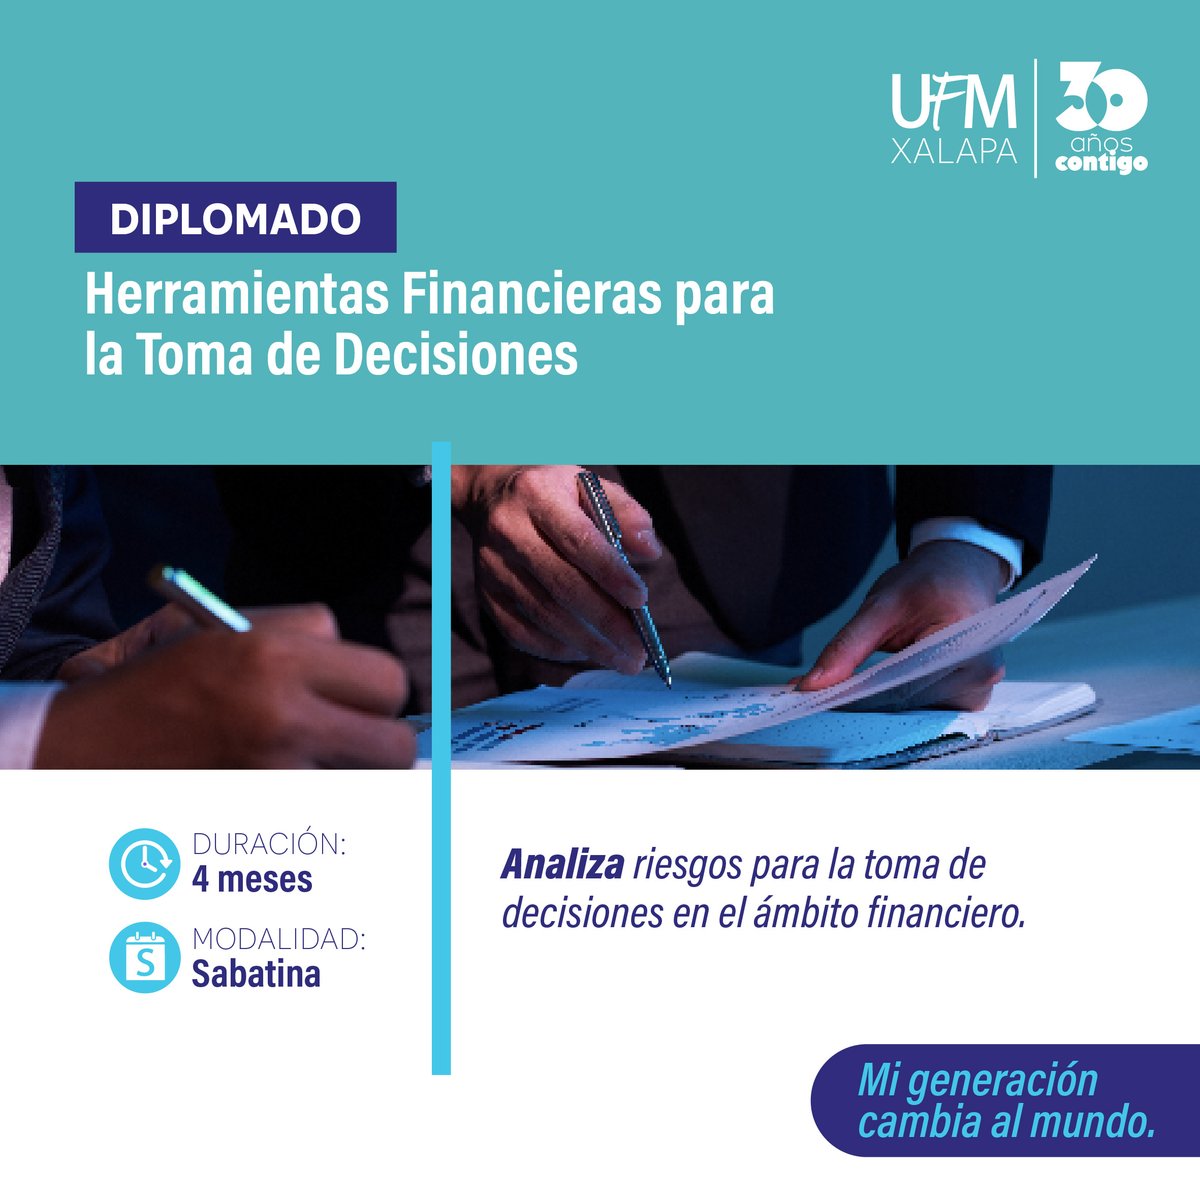 UFM_Universidad tweet picture